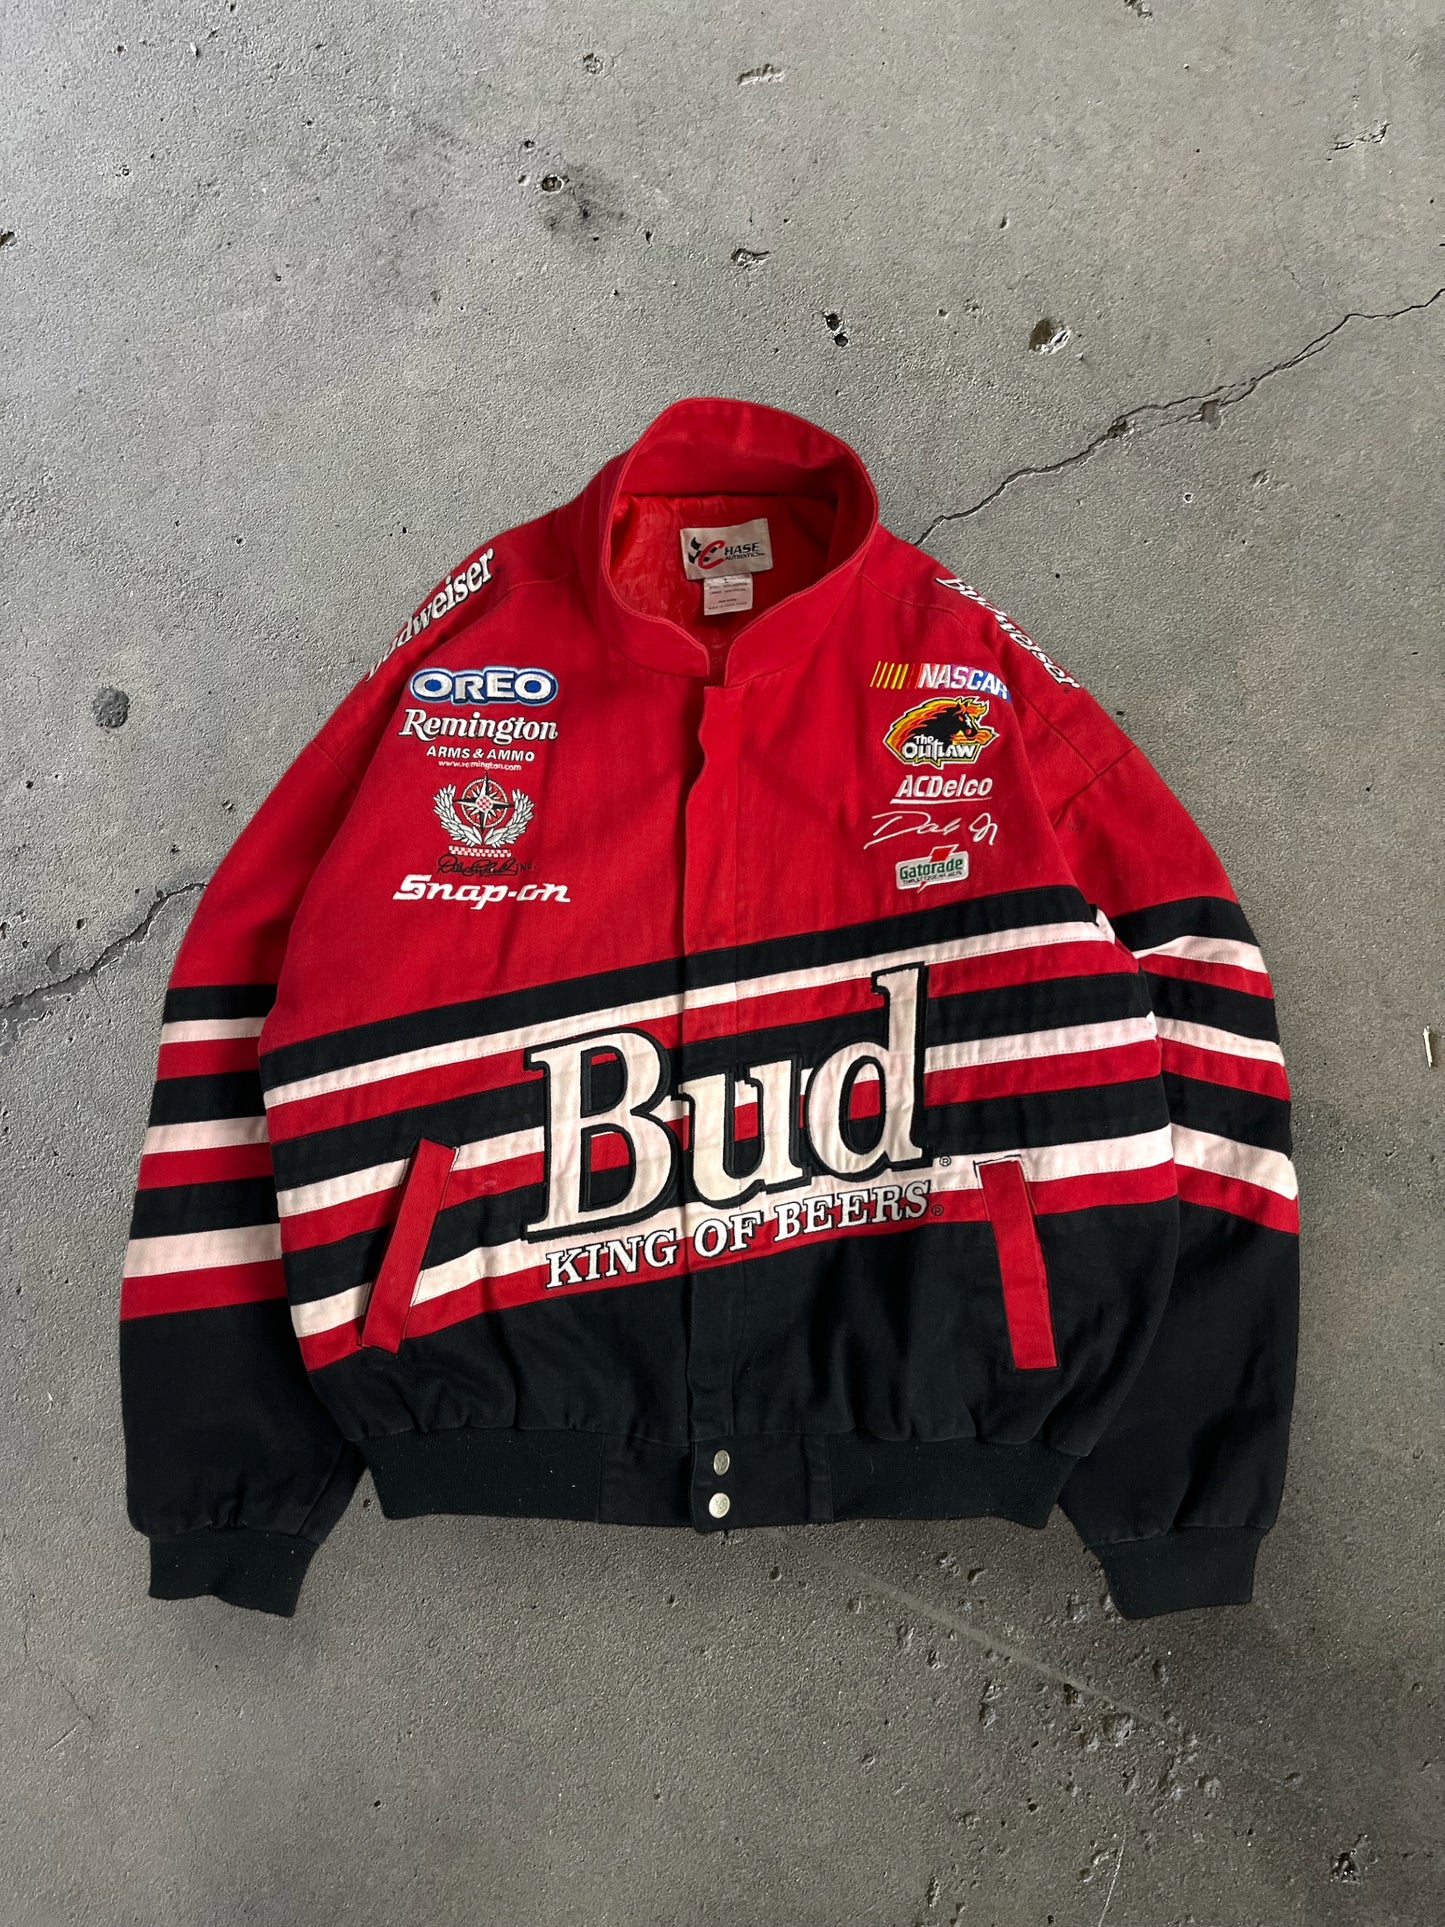 90s Budweiser King of Beers Racing